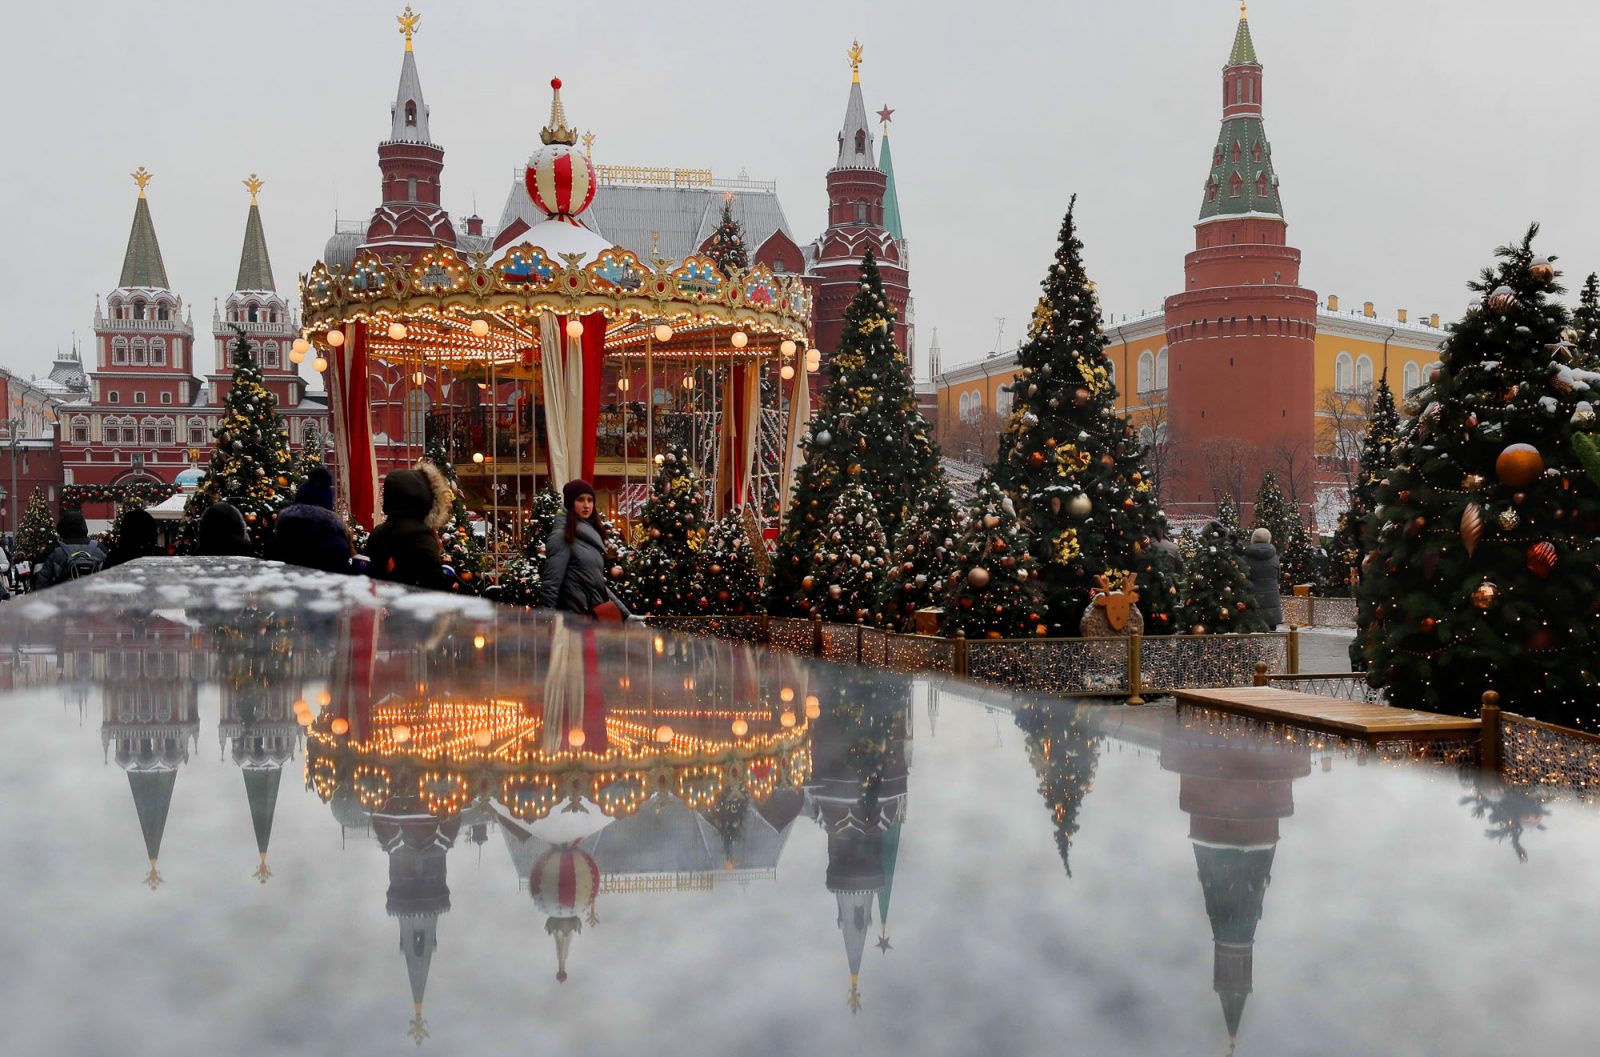 Погода На Новый Год 2022 В Москве